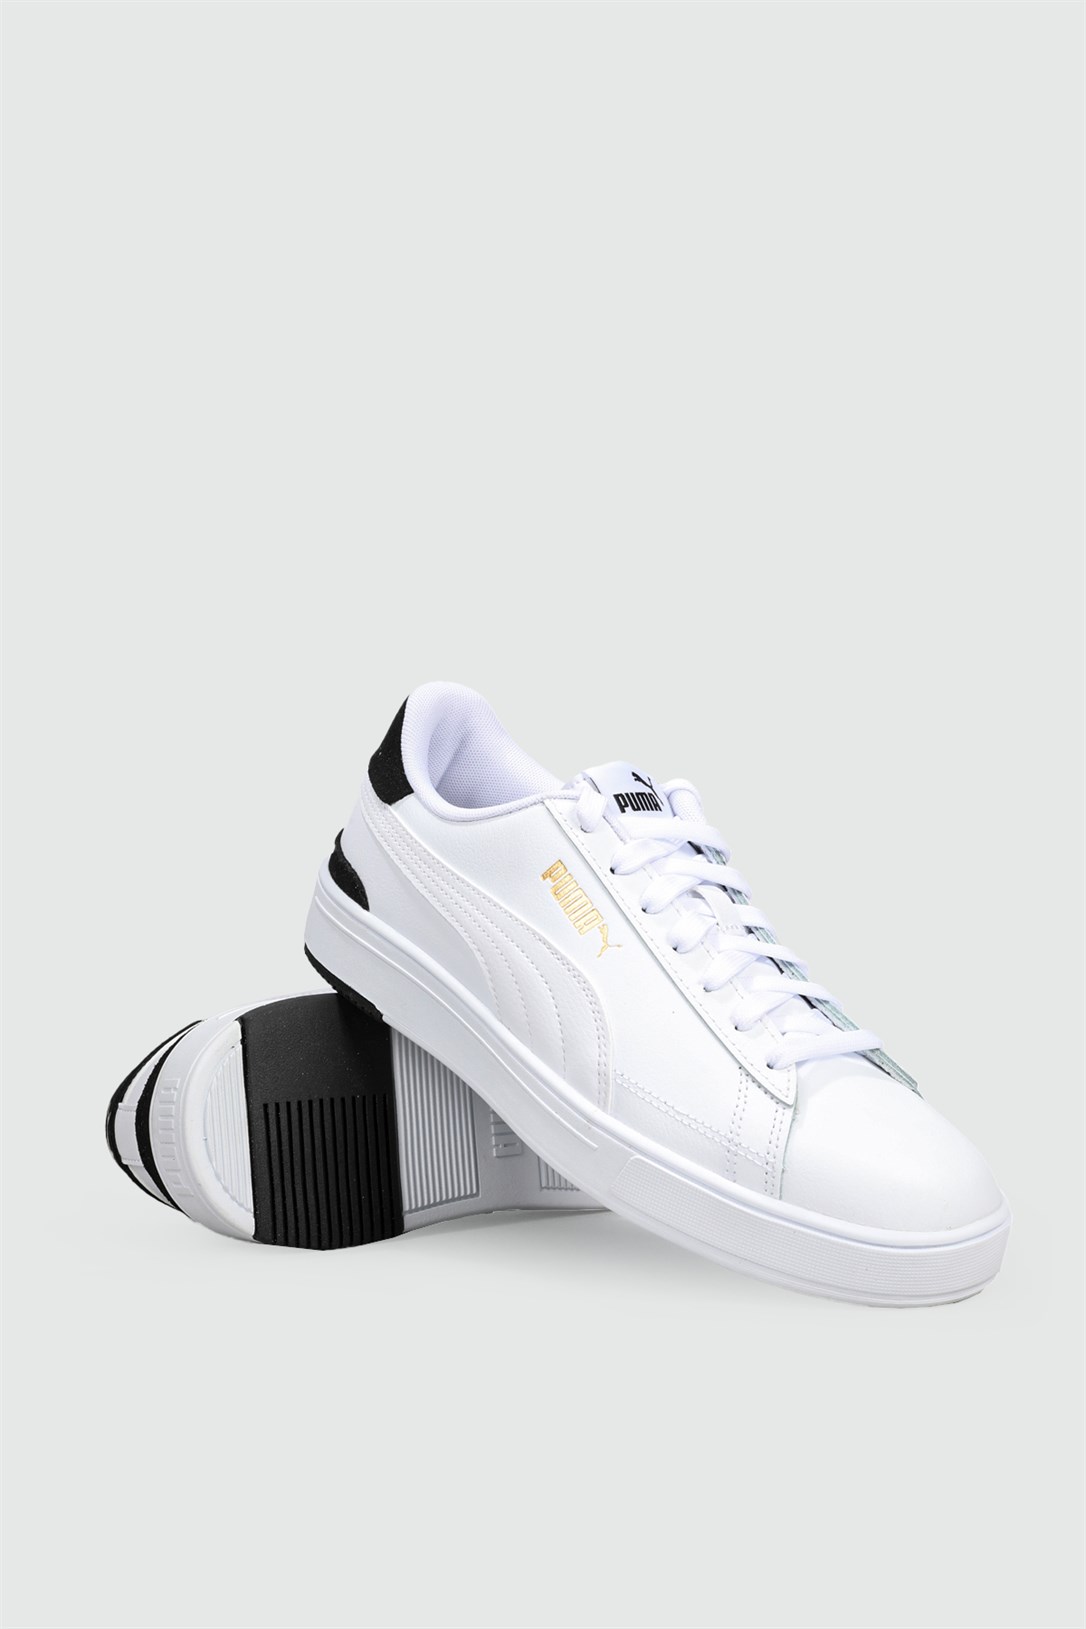 Puma Deri Rahat Taban Günlük Beyaz Siyah Erkek Spor Ayakkabı 380188-02 |  Ayakkabı City